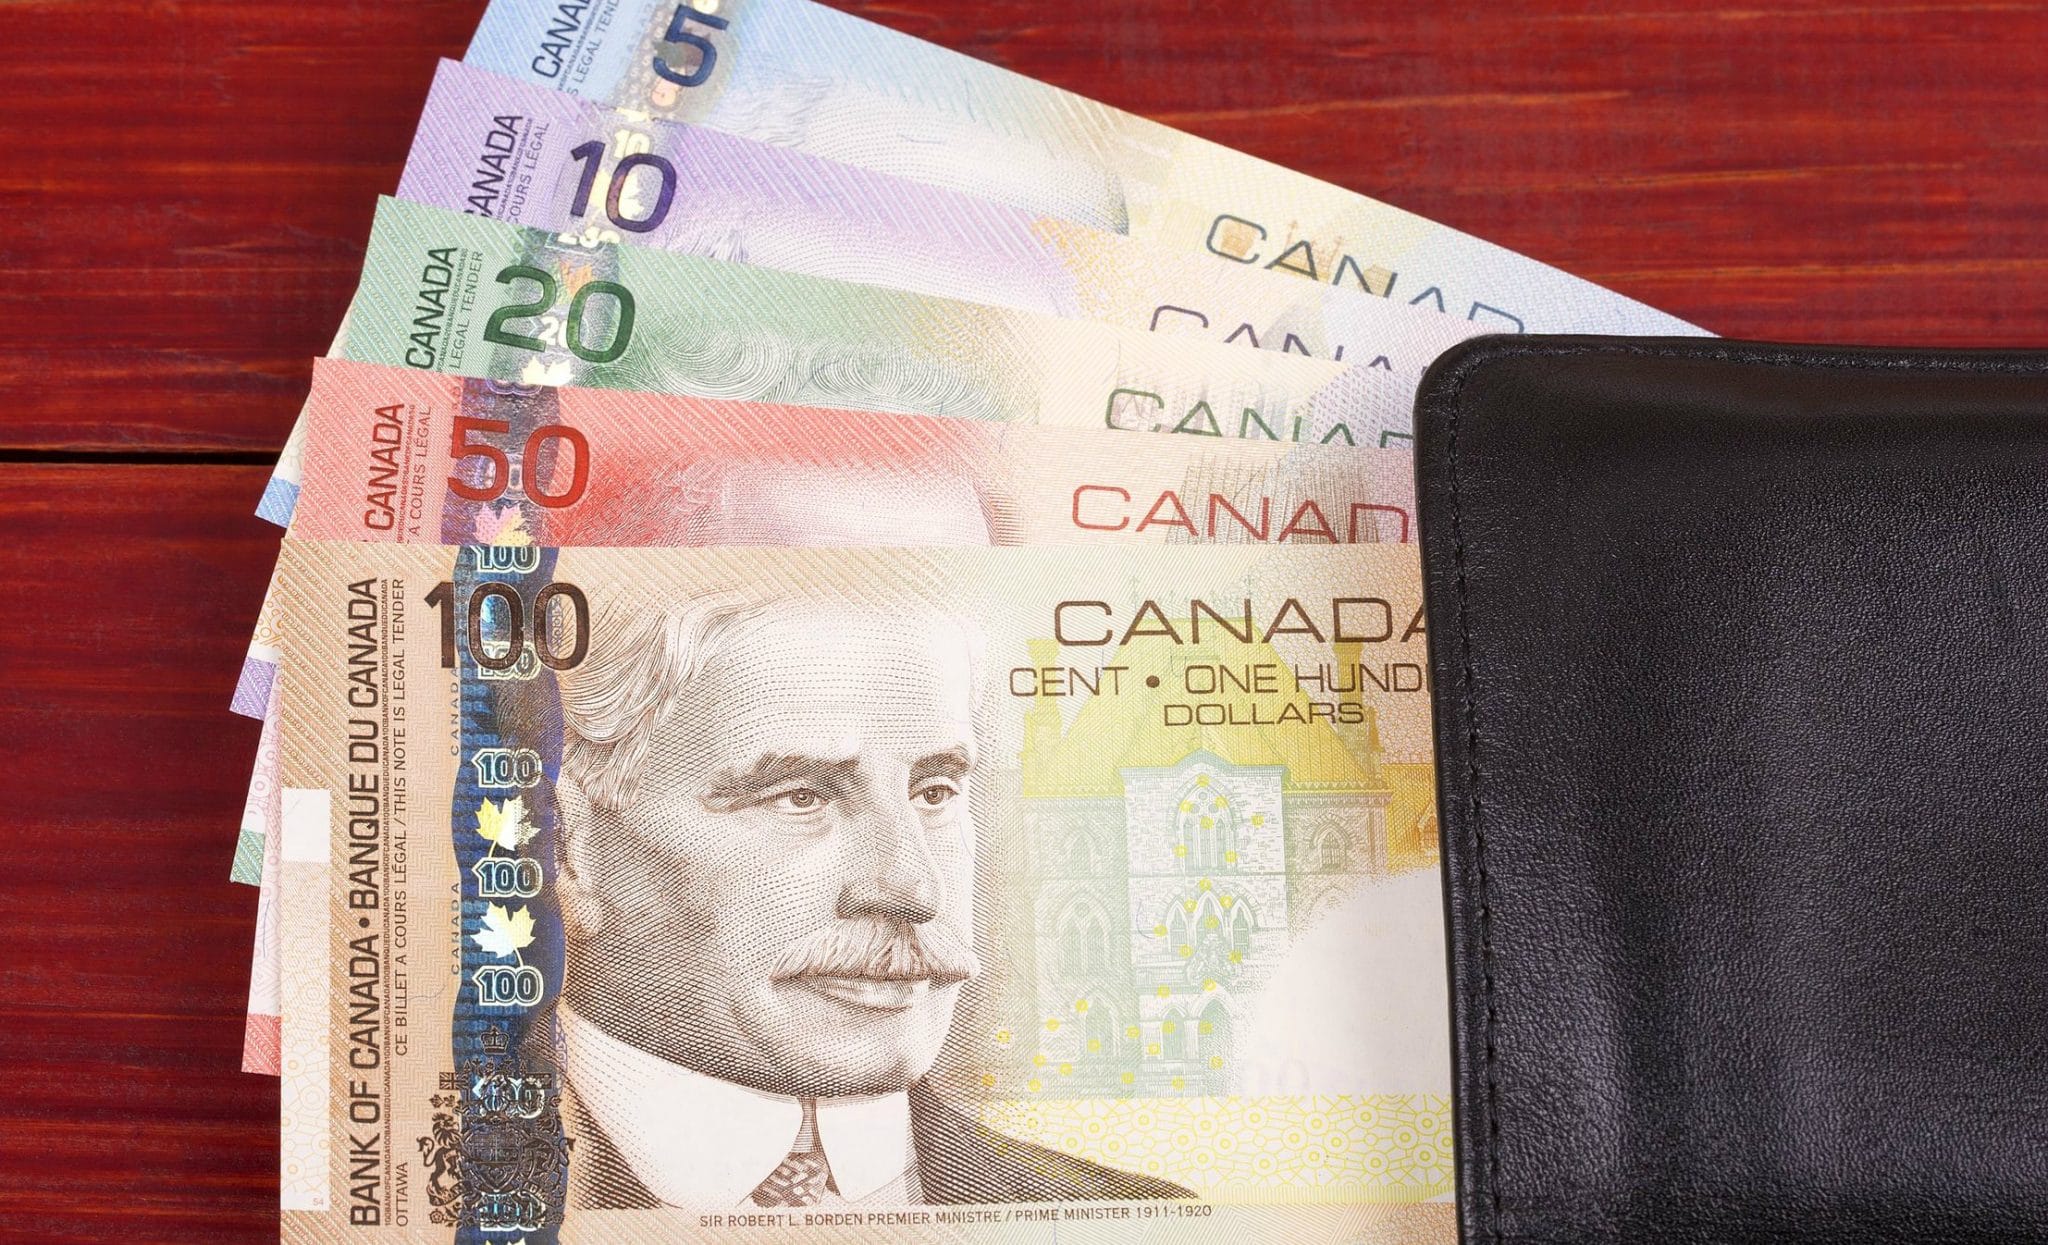 Canadá: ¿Cuánto cuesta la canasta básica?